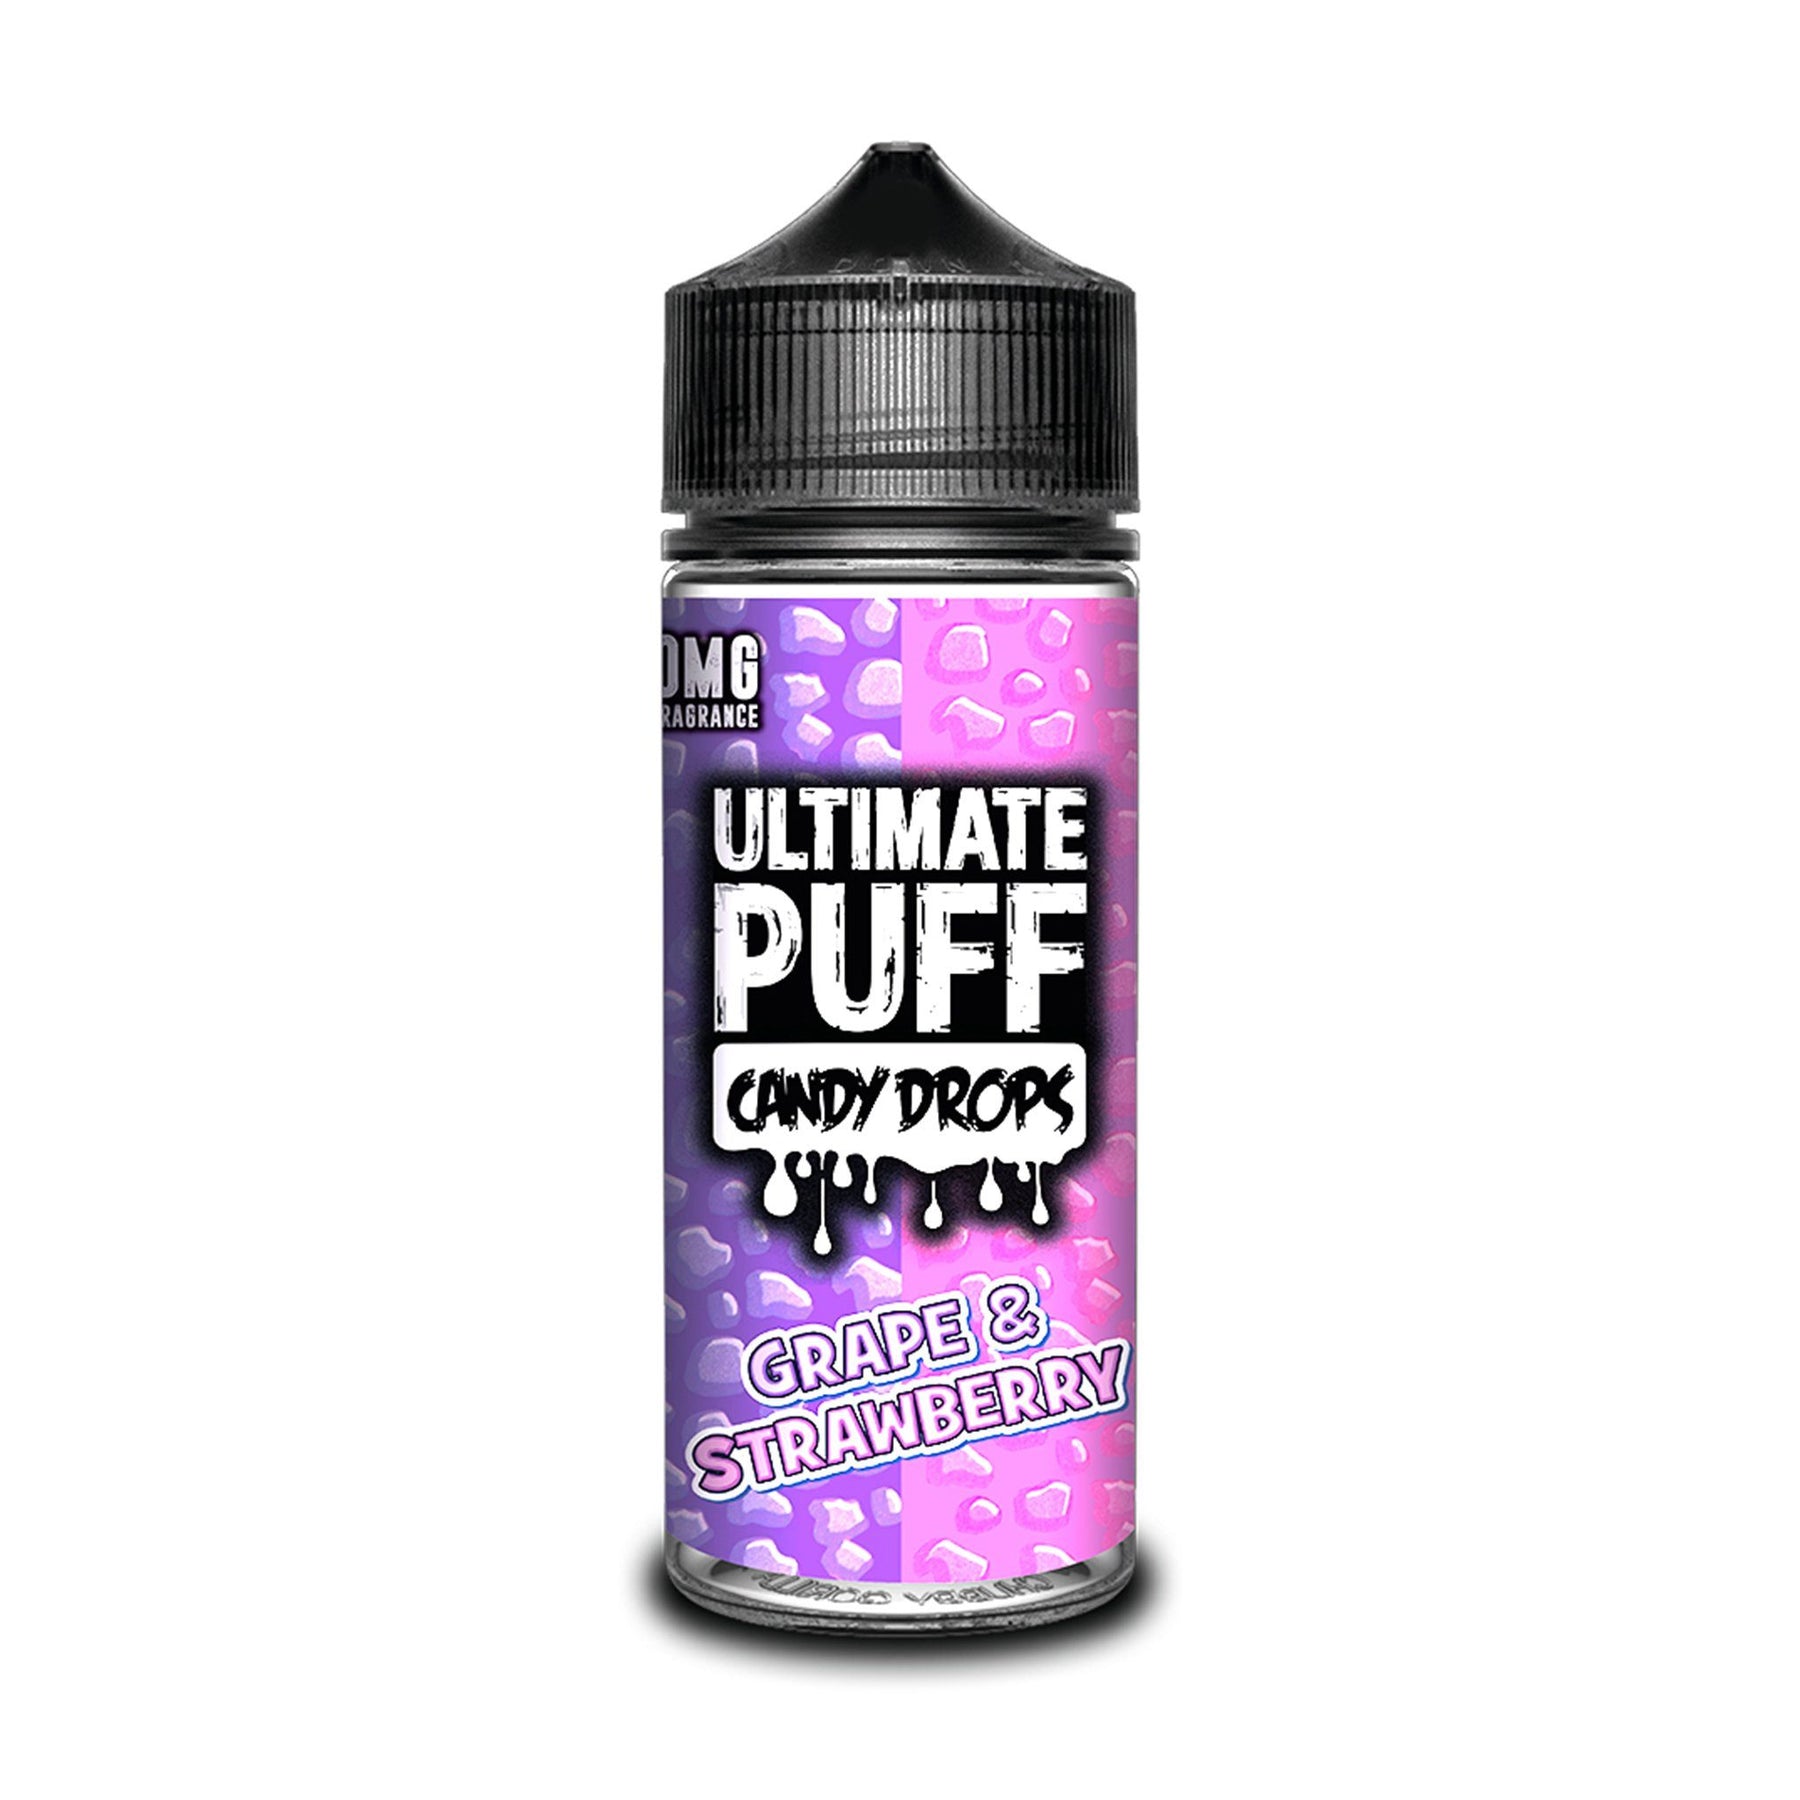 Ultimate Puff Short Fill E-Liquid Grape & Strawberry Candy Drops